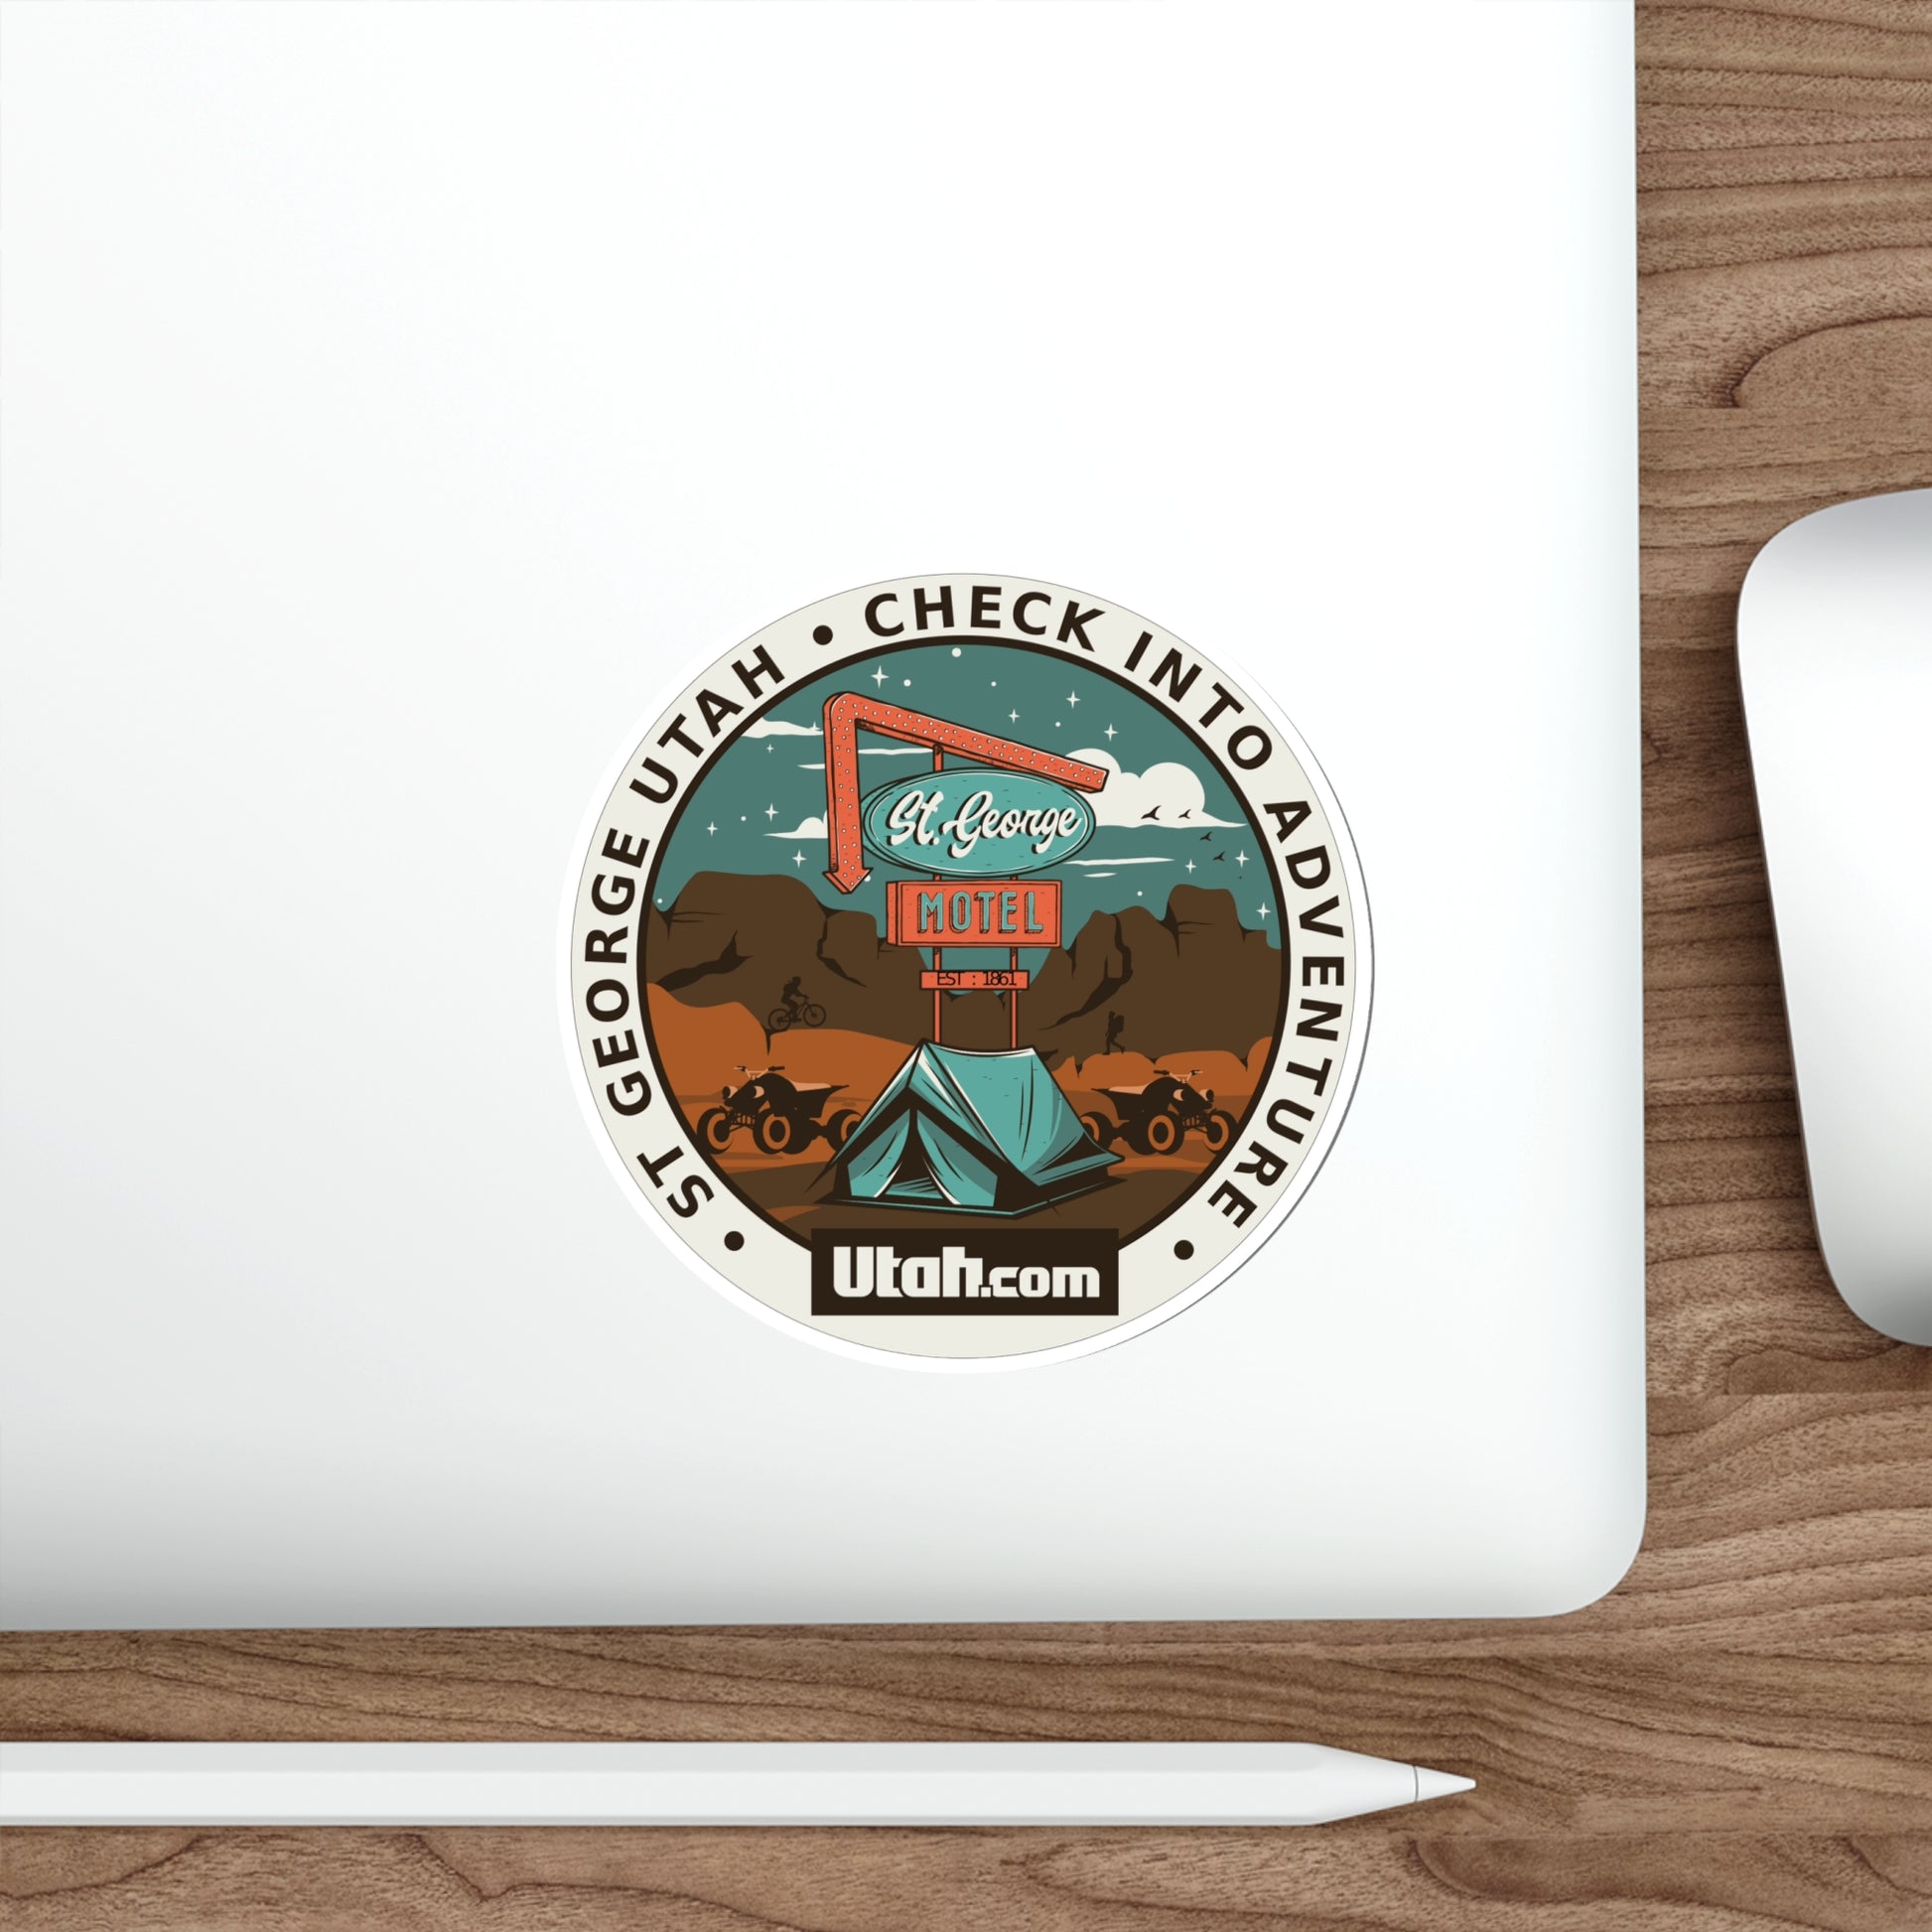 "Check Into Adventure" Sticker - Utah.com